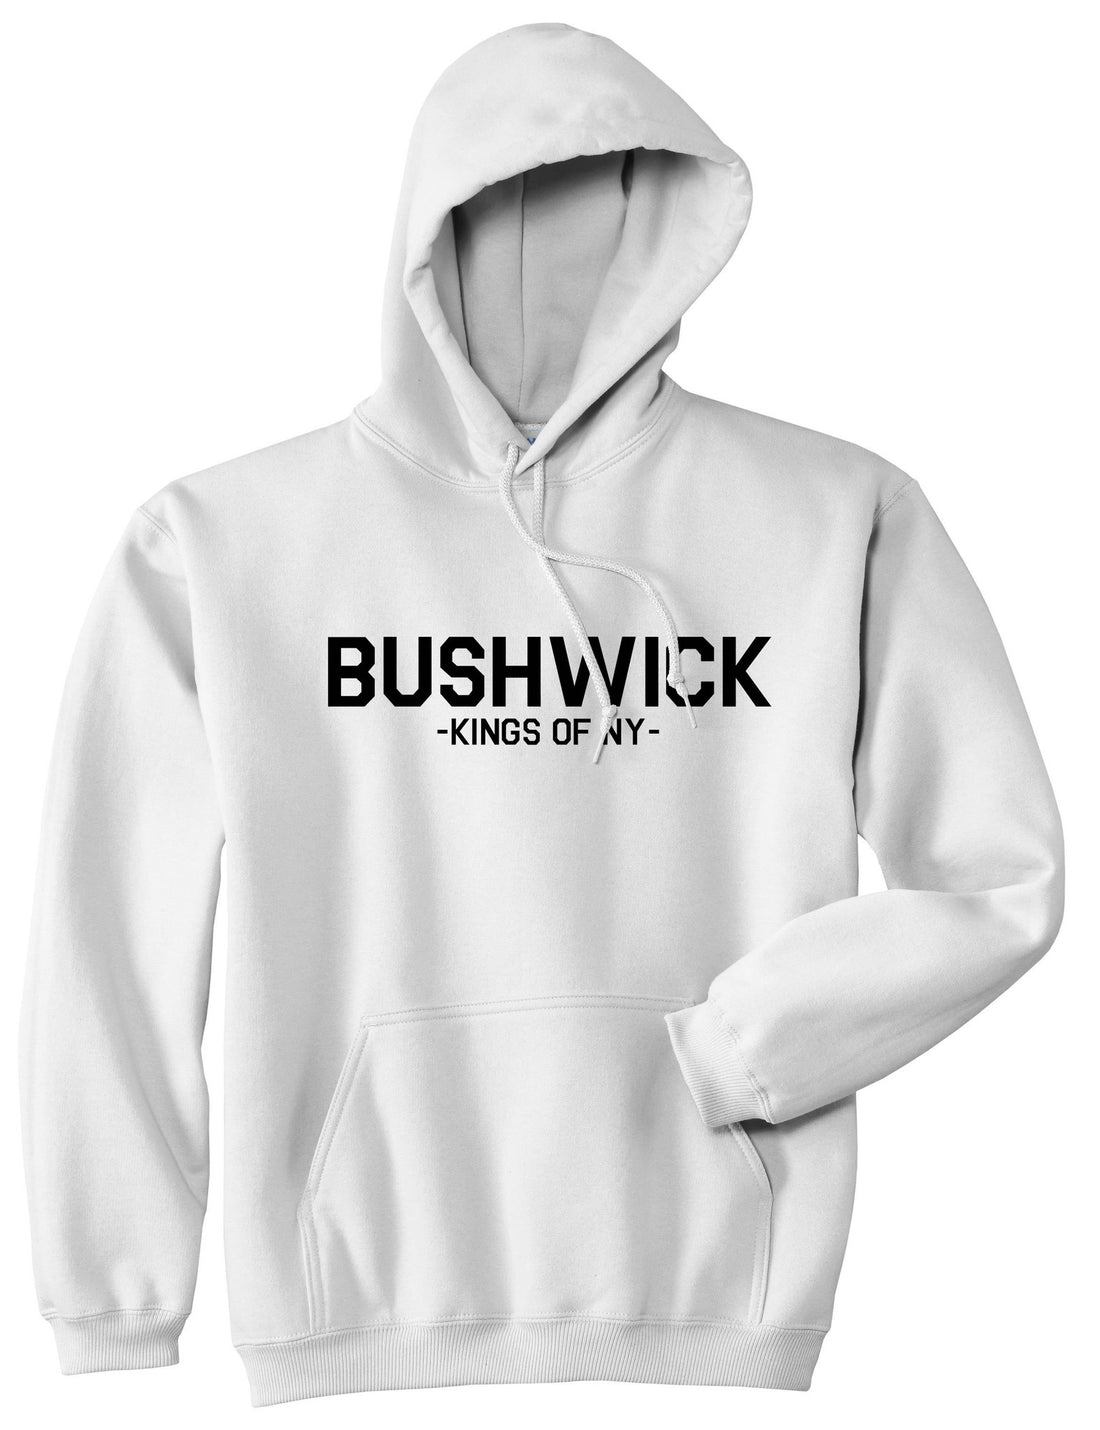 Bushwick Brooklyn New York Pullover Hoodie Hoody in White